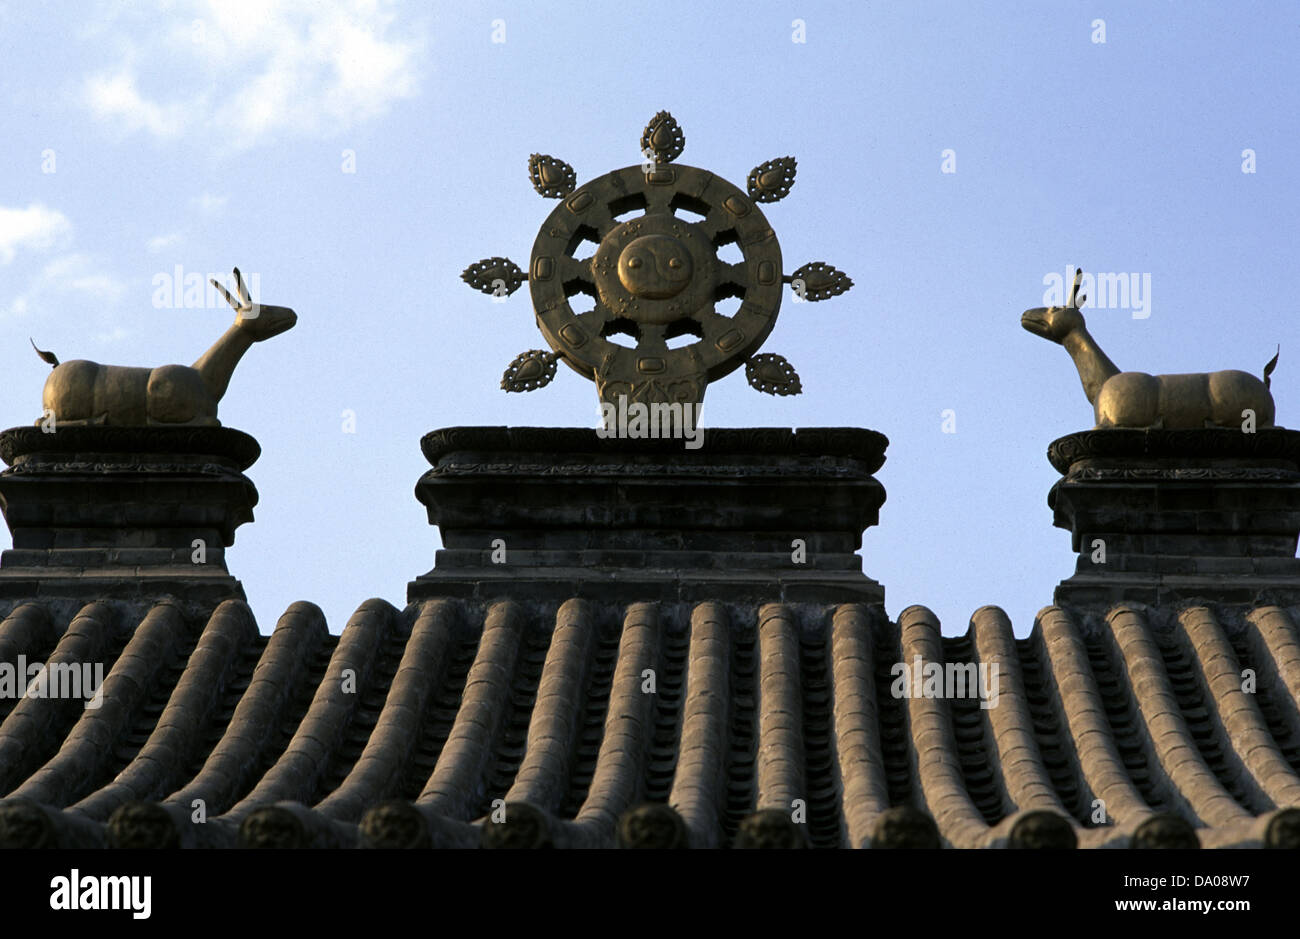 La roue du Dharma et le cerf sculpture sur haut Ih Juu ou Temple Da Zhao un monastère bouddhiste construit en 1579 à Hohhot capitale de la région autonome de Mongolie intérieure. Chine Banque D'Images